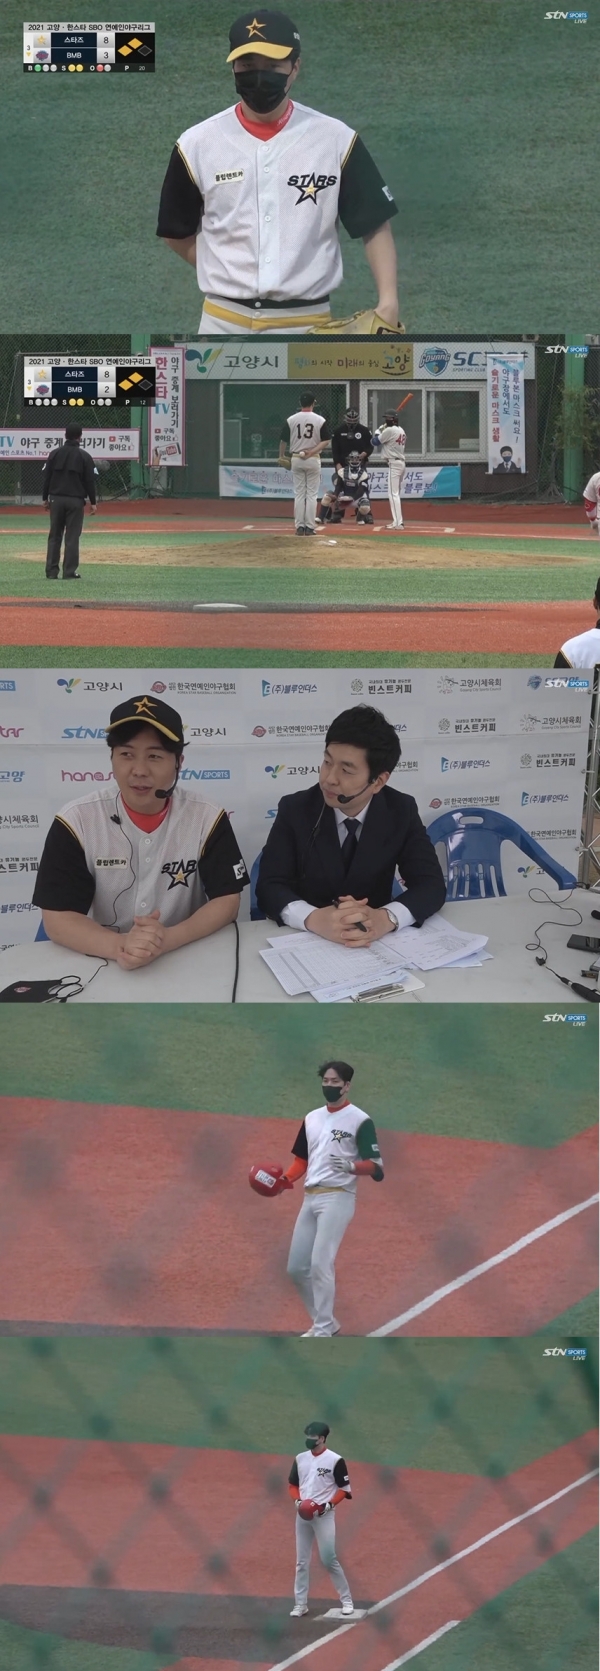 STN스포츠 ‘2021 고양-한스타 SBO(연예인야구)리그’ 중계방송 화면